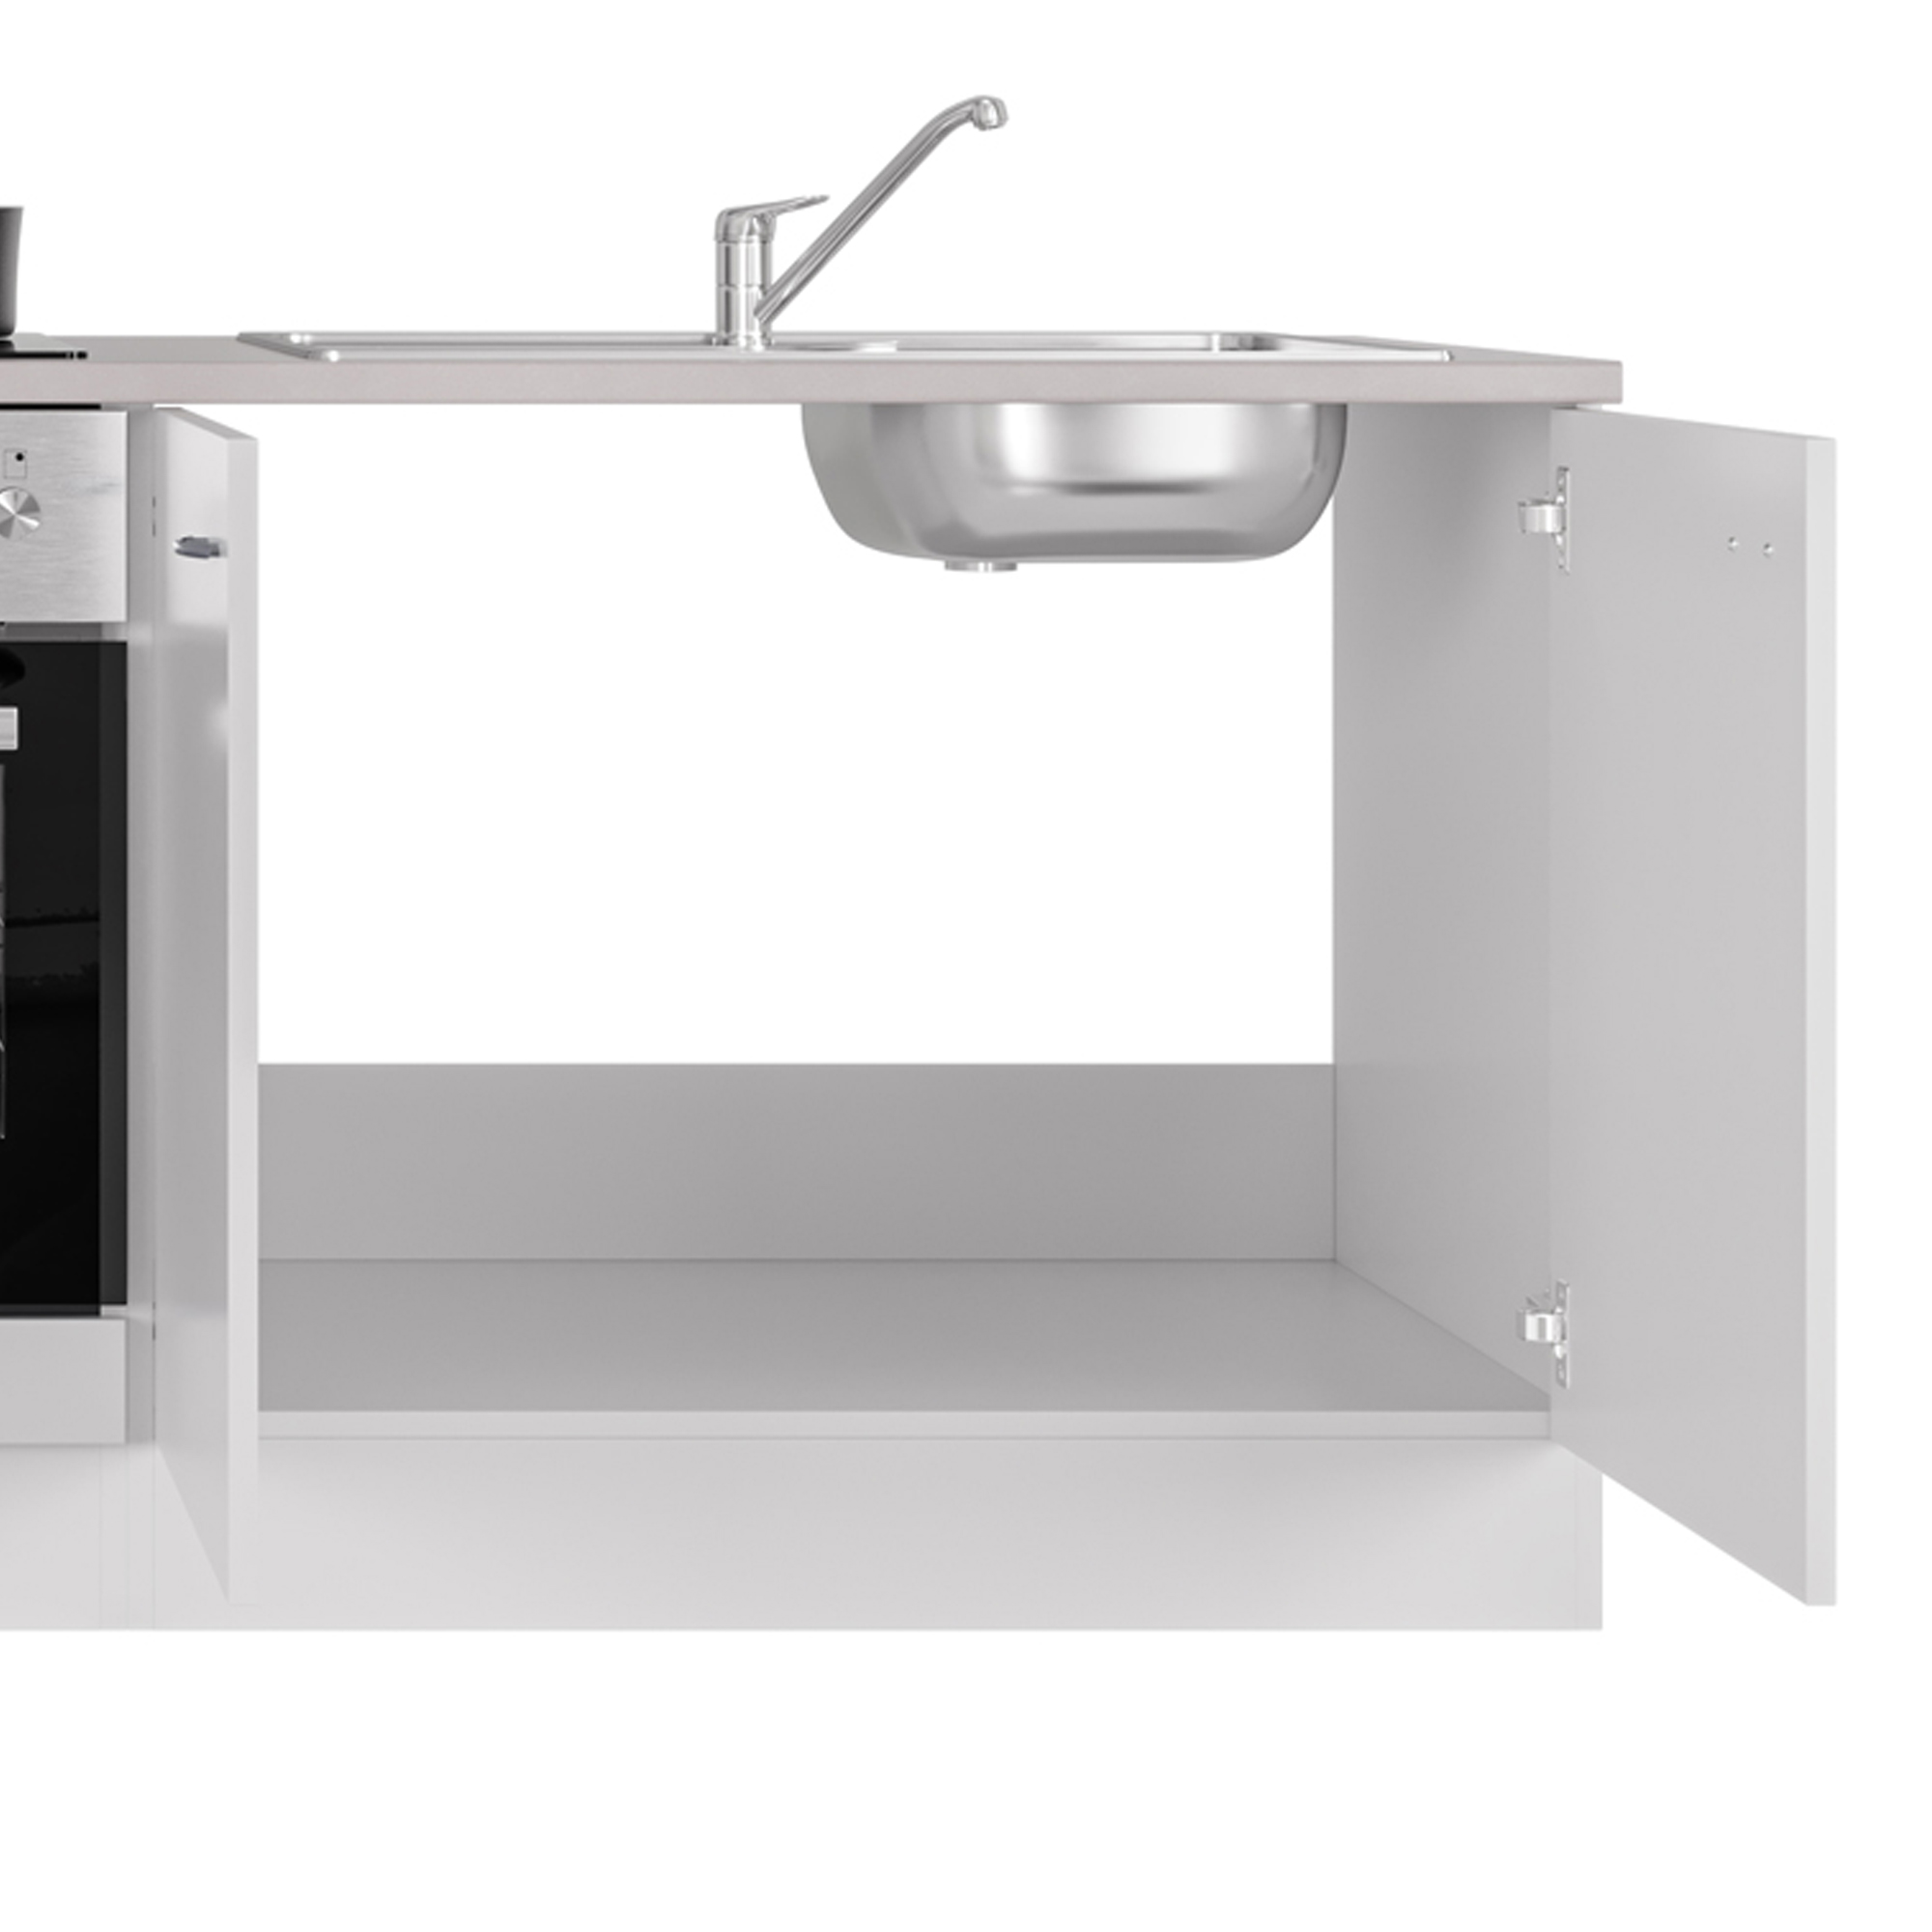 Küchen-Spülenschrank UNNA - 2-türig - cm 100 breit - Weiß